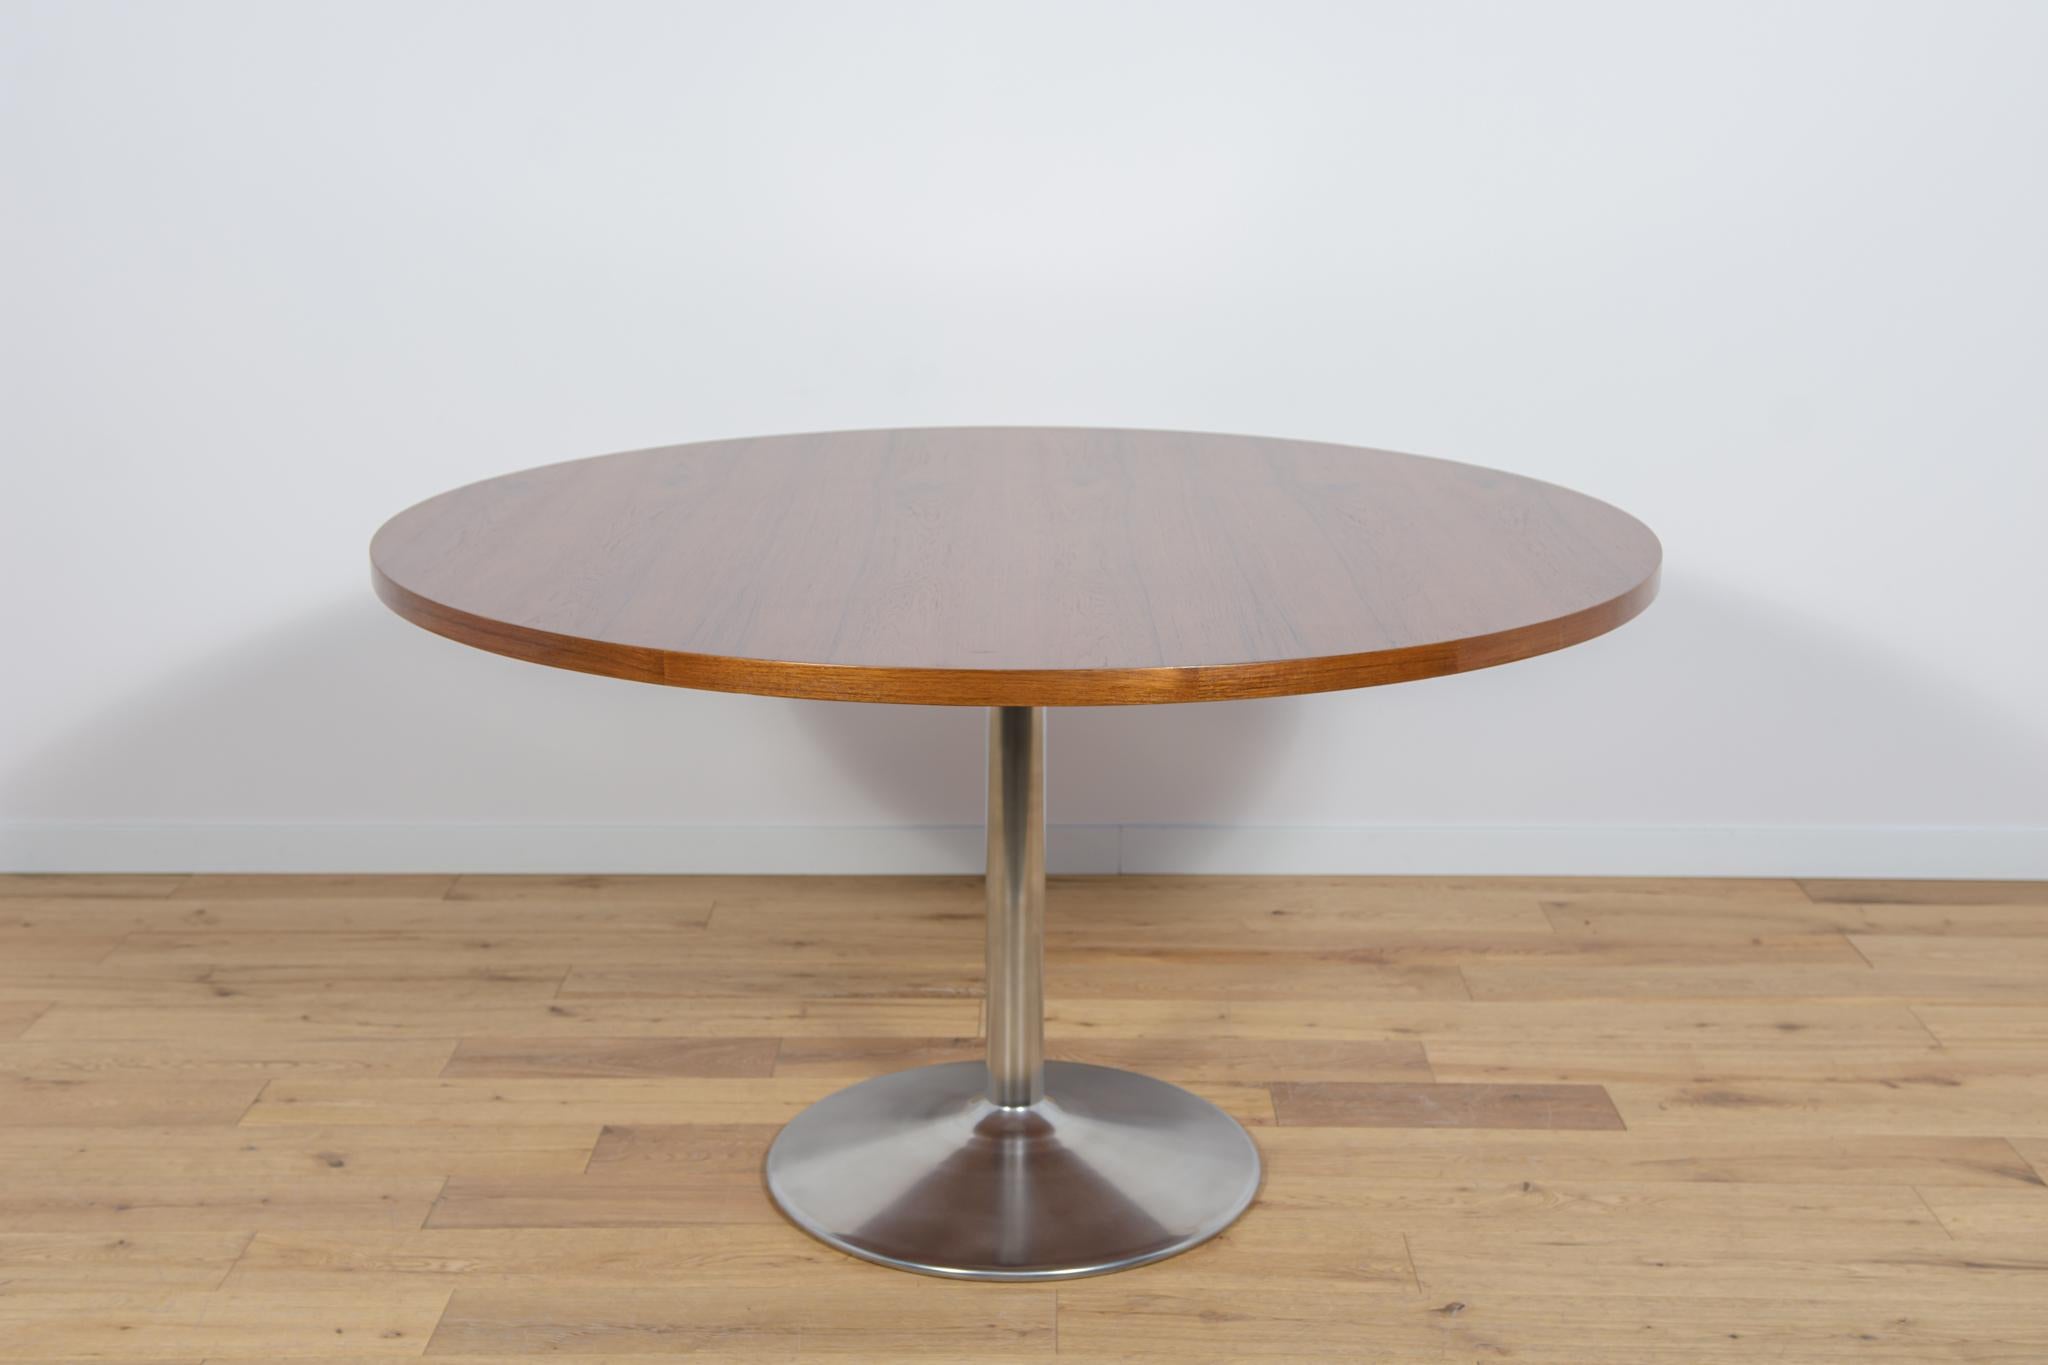 La table a été fabriquée au Danemark dans les années 1970. Plateau de table en placage de teck. Les meubles ont fait l'objet d'une rénovation complète de la menuiserie, d'un nettoyage de l'ancien revêtement et d'une finition à l'huile danoise de